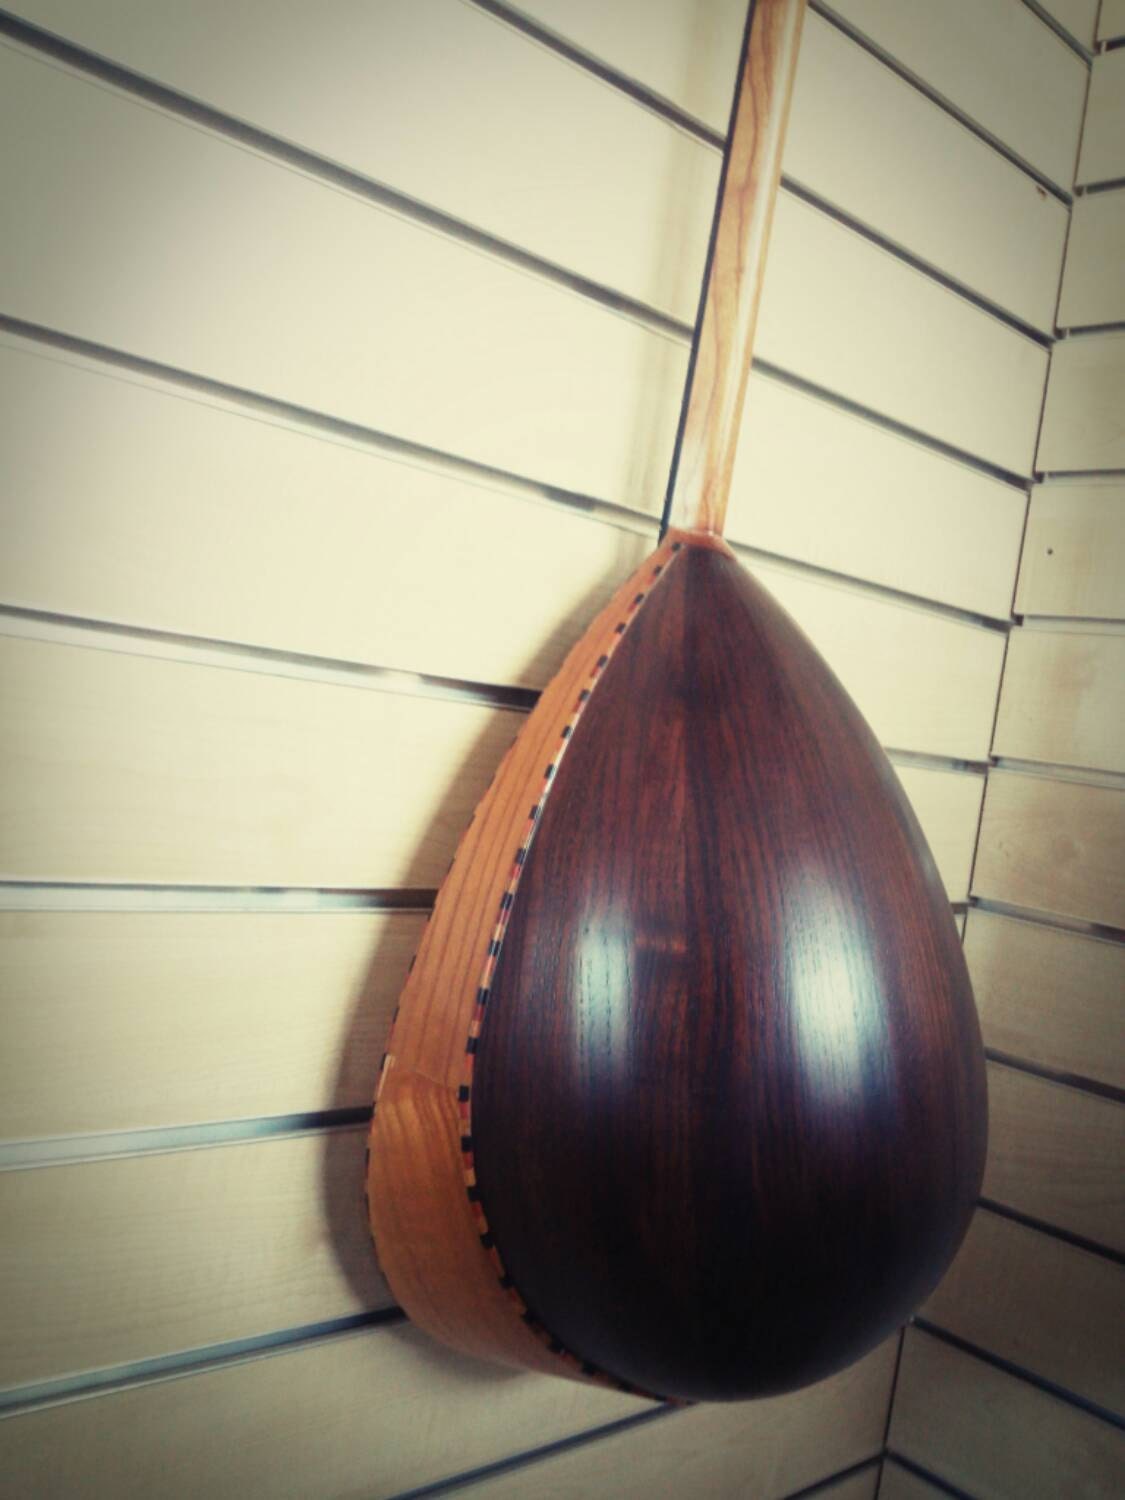 turkish stringed instrument